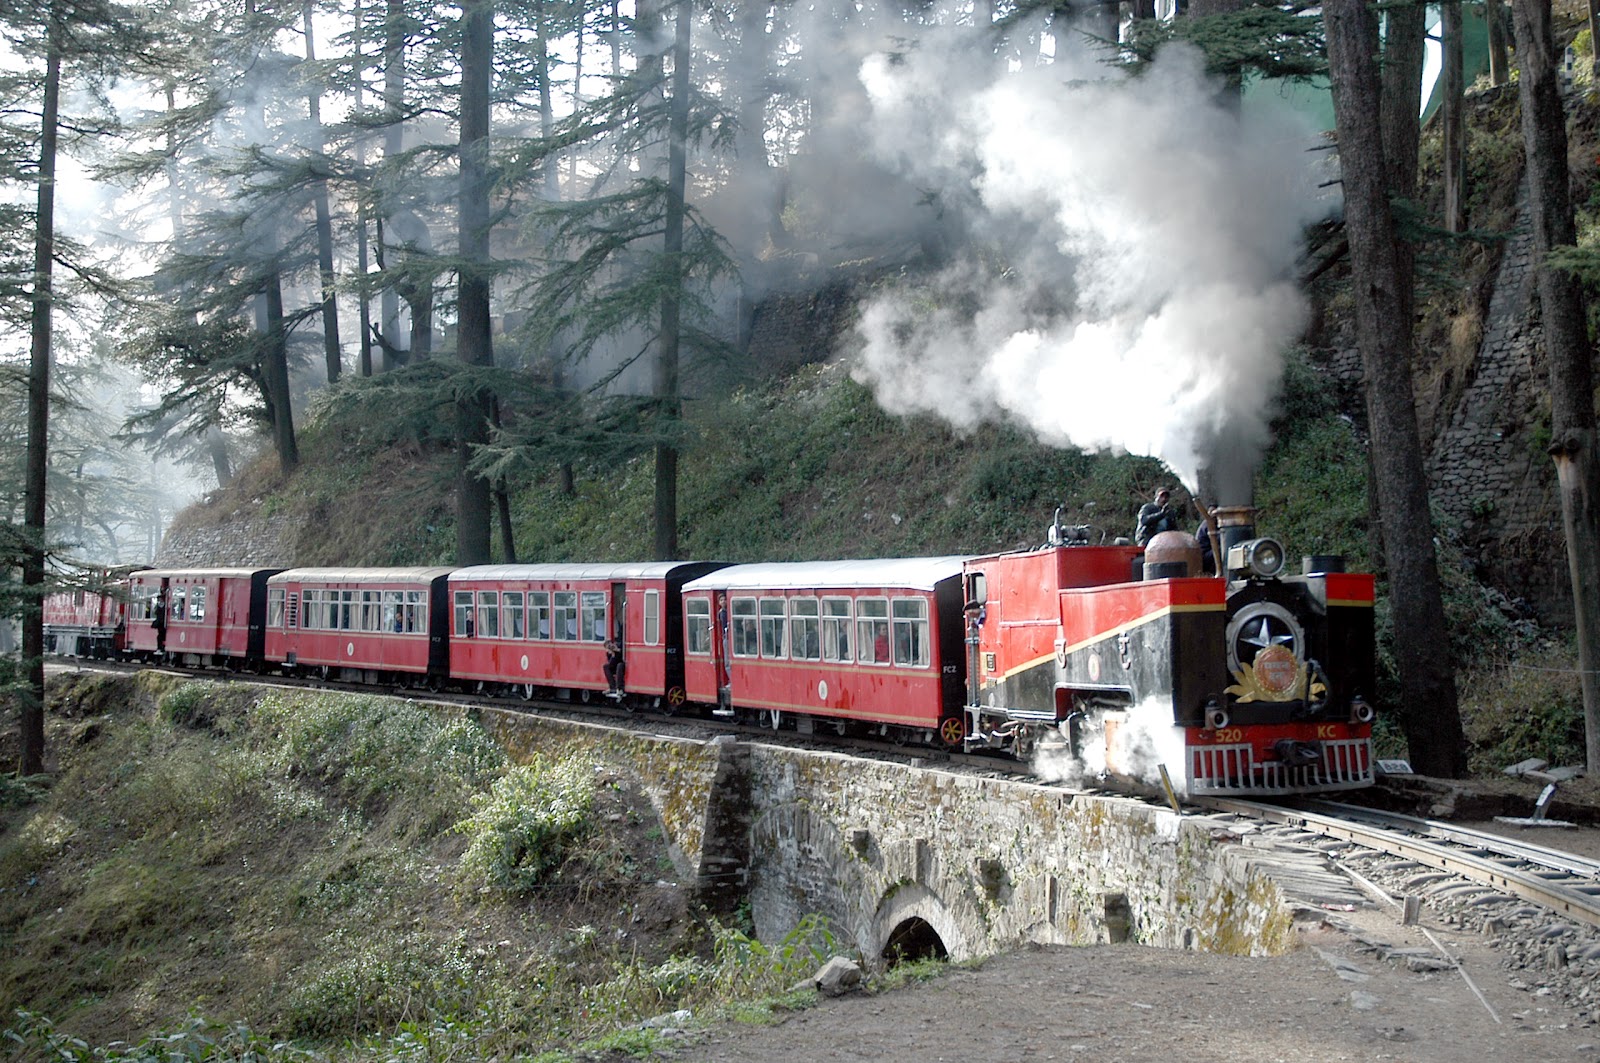 Shimla Train Experience